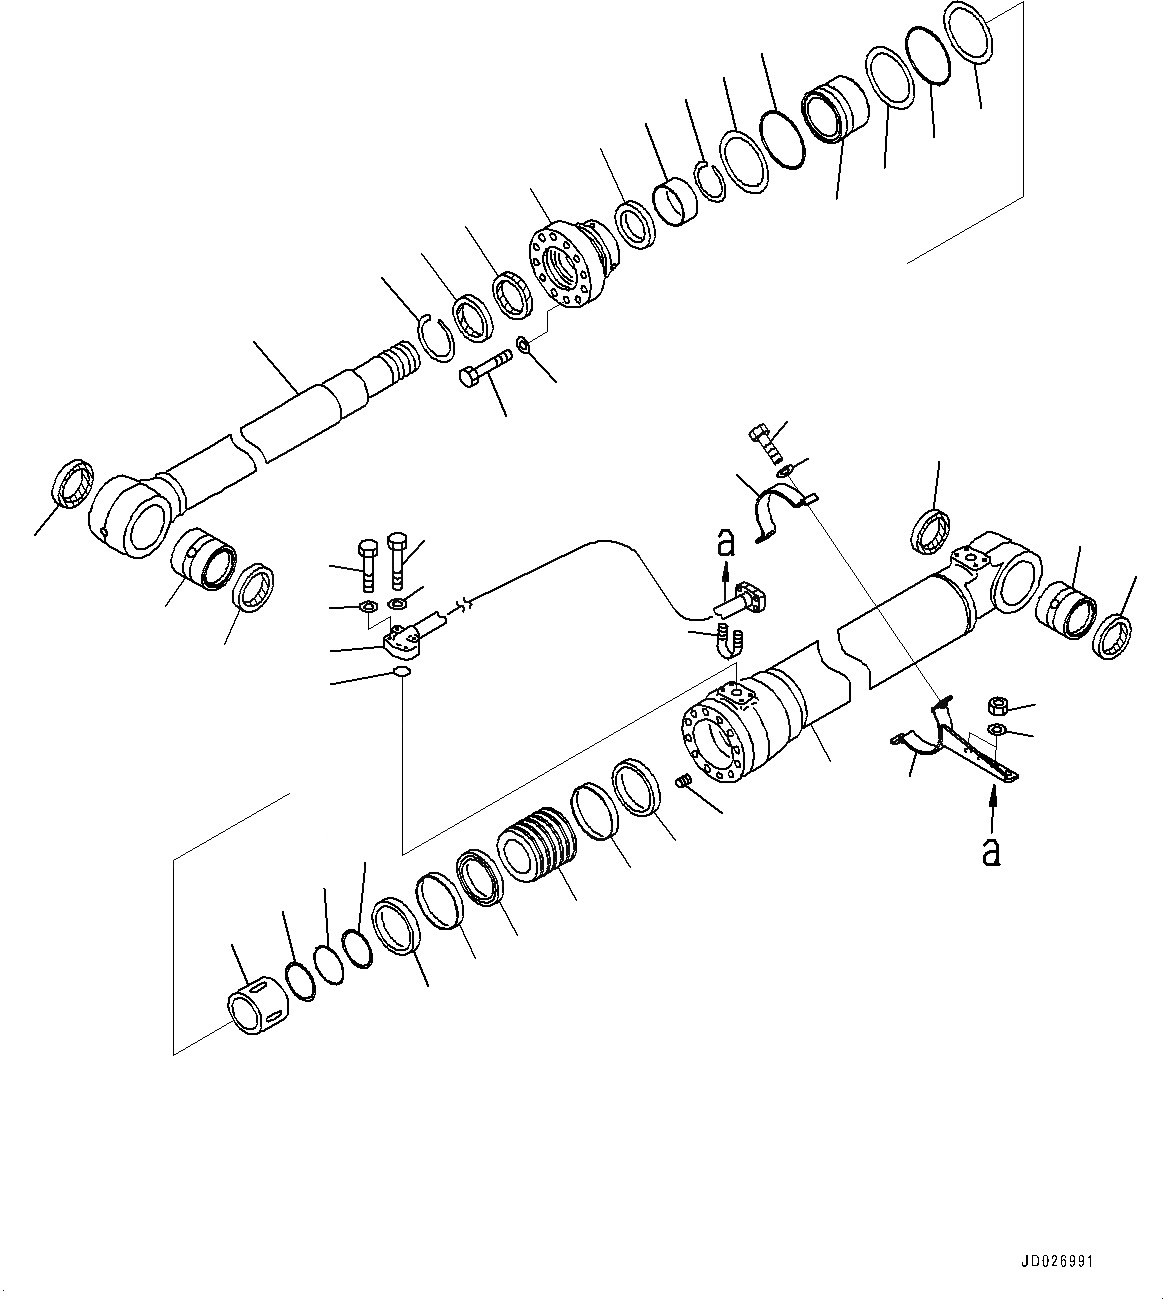 Схема запчастей Komatsu PC220LC-8 - ЦИЛИНДР СТРЕЛЫ, ПРАВ. (№877-) ЦИЛИНДР СТРЕЛЫ, ДЛЯ СТРЕЛЫ И РУКОЯТЬ ANTI-DROP КЛАПАН